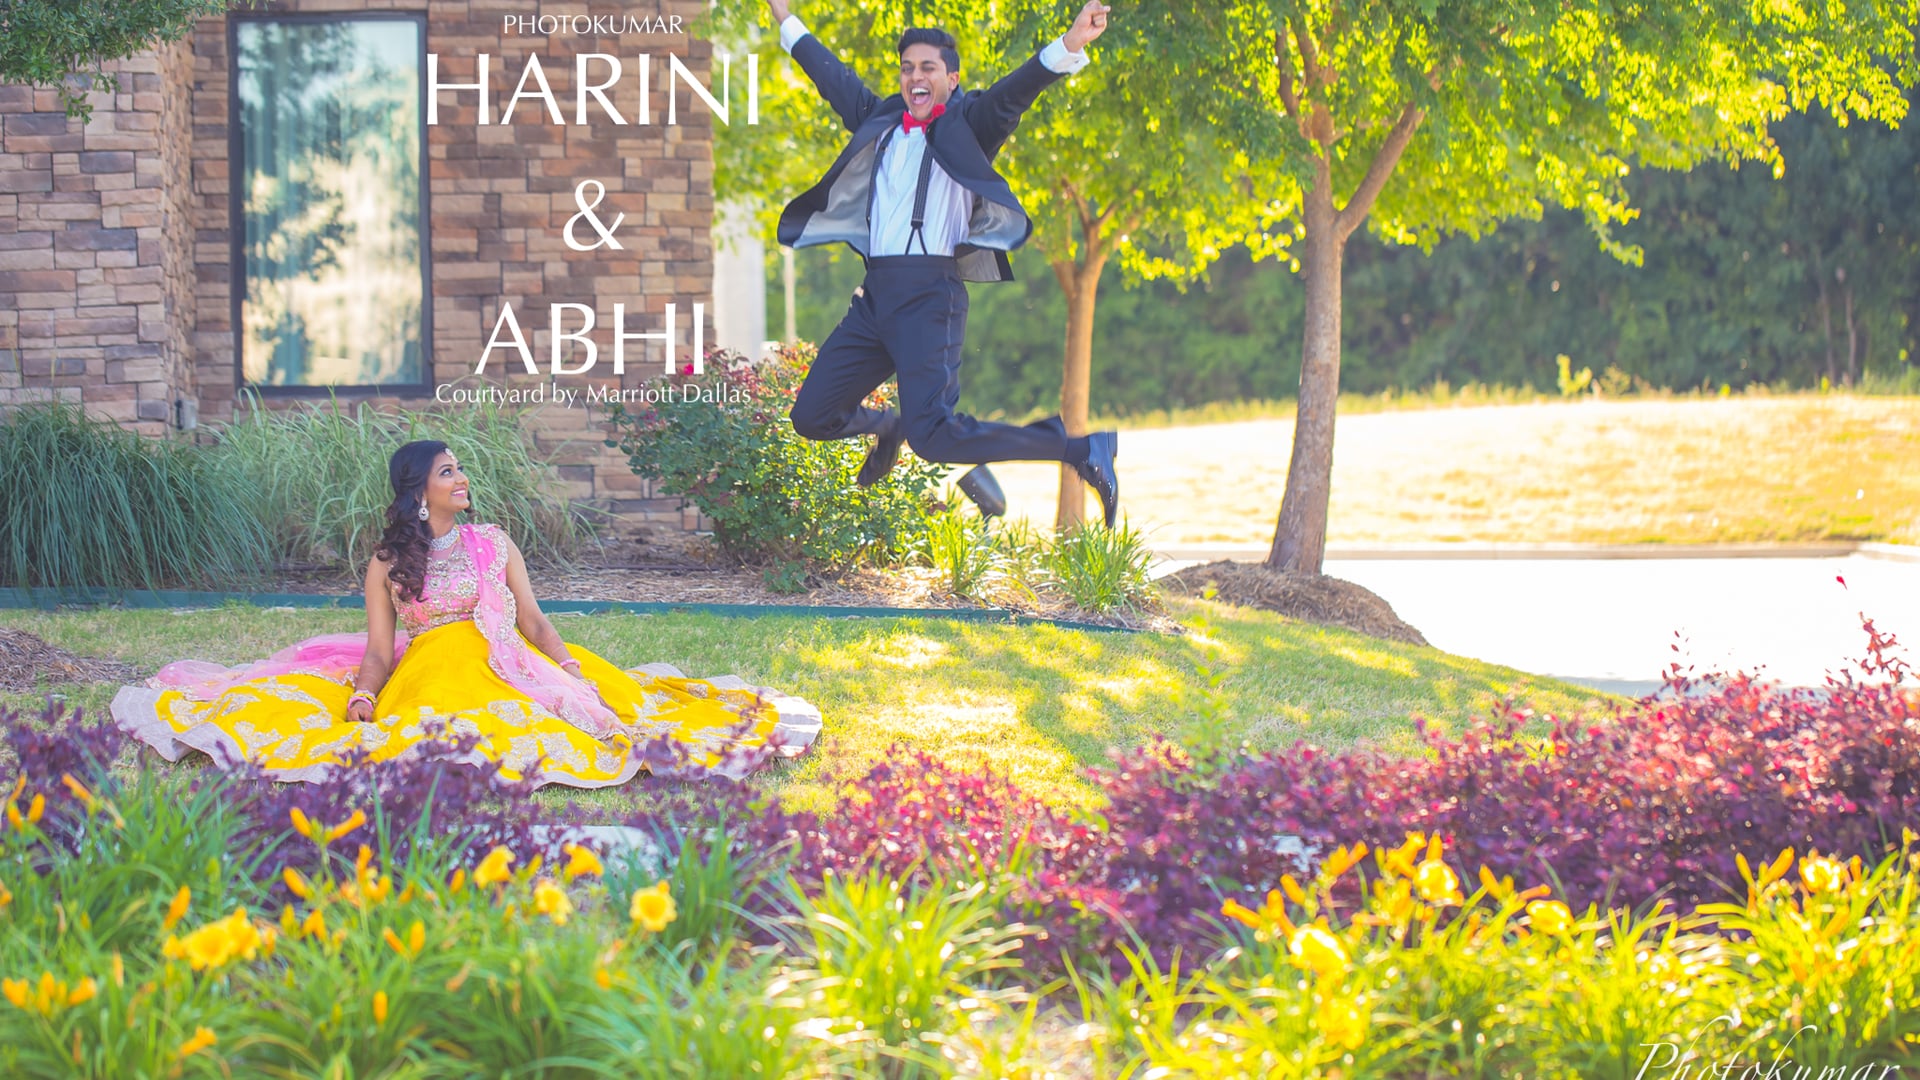 Harini & Abhi